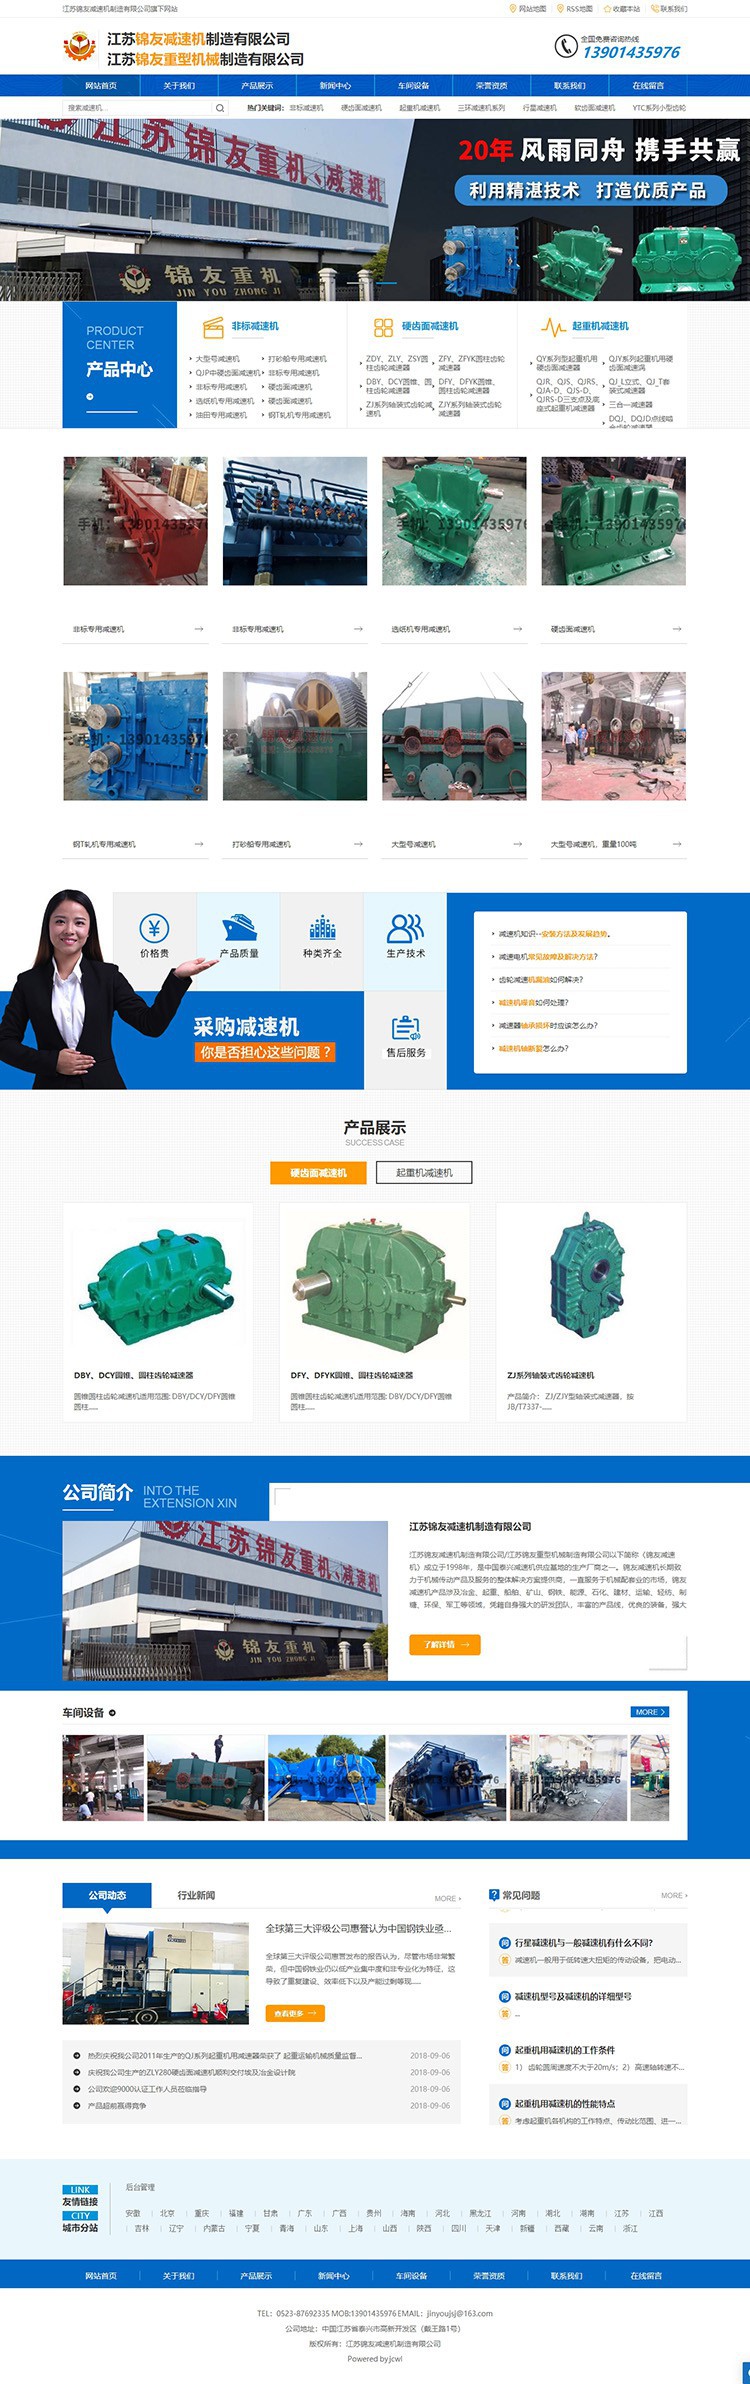 锦友减速机”网站设计和开发案例